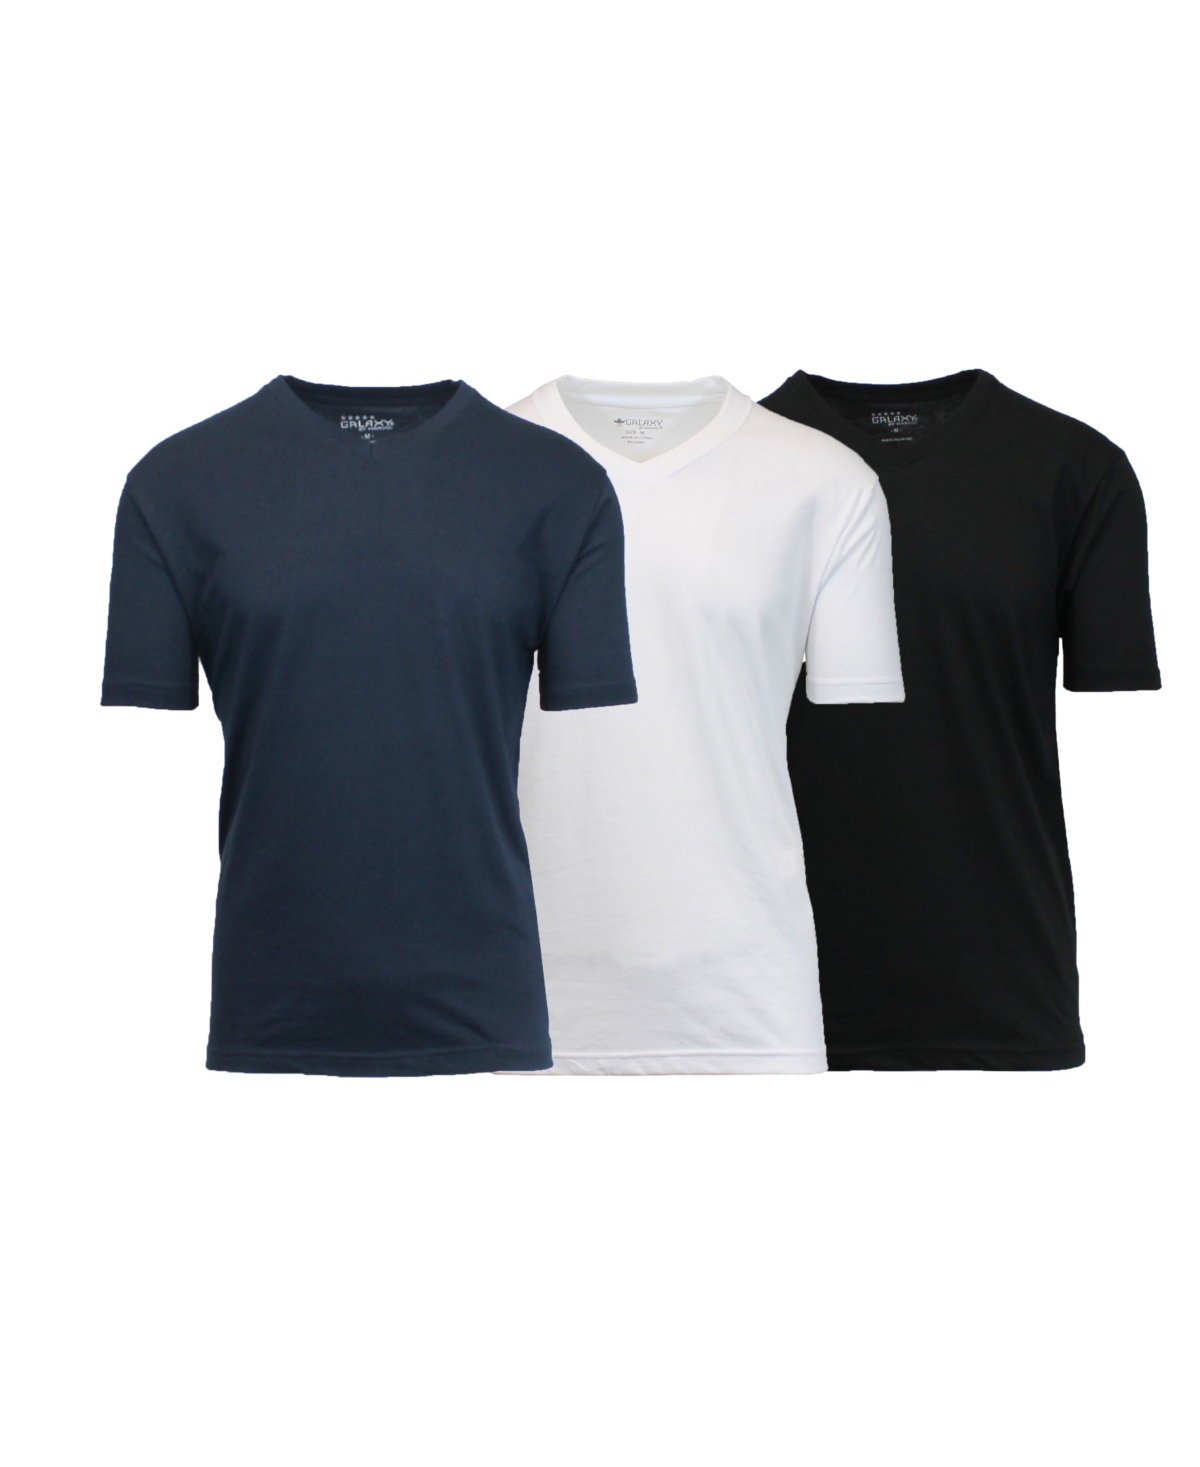 Men's Short Sleeve V-Neck T-shirt, Pack of 3 - Black-White-Navy